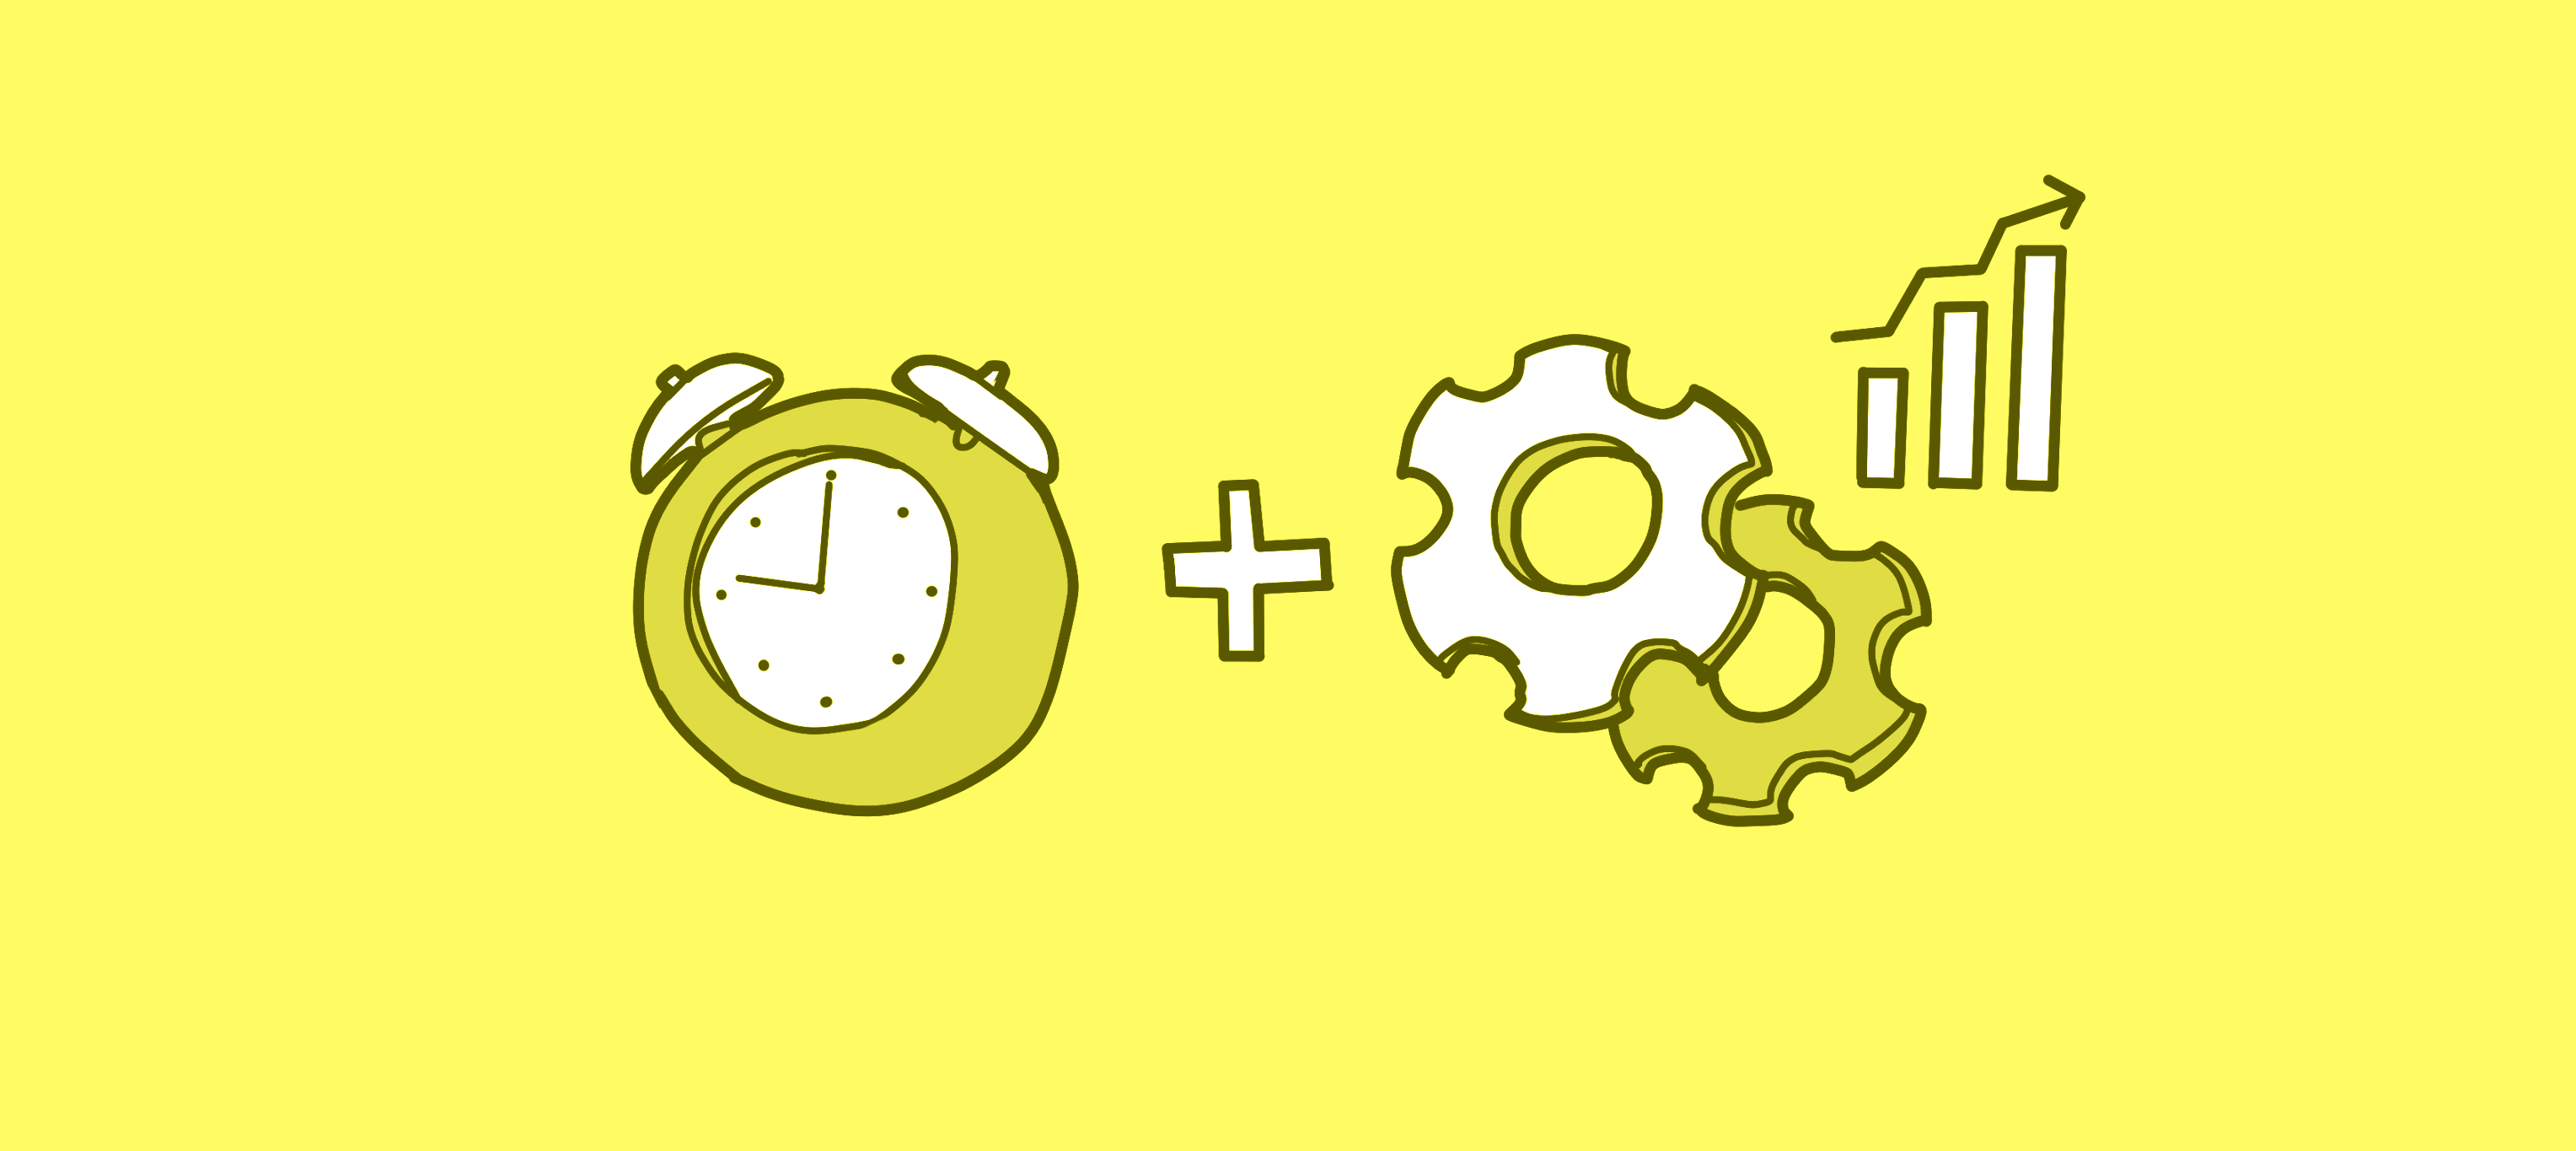 Figura de um relógio, de duas engrenagens sobrepostas e de um gráfico de barras com uma seta indicando a evolução crescente do gráfico, interpostas por um sinal de soma ilustrando a gestão de tempo e produtividade em viagens corporativas.